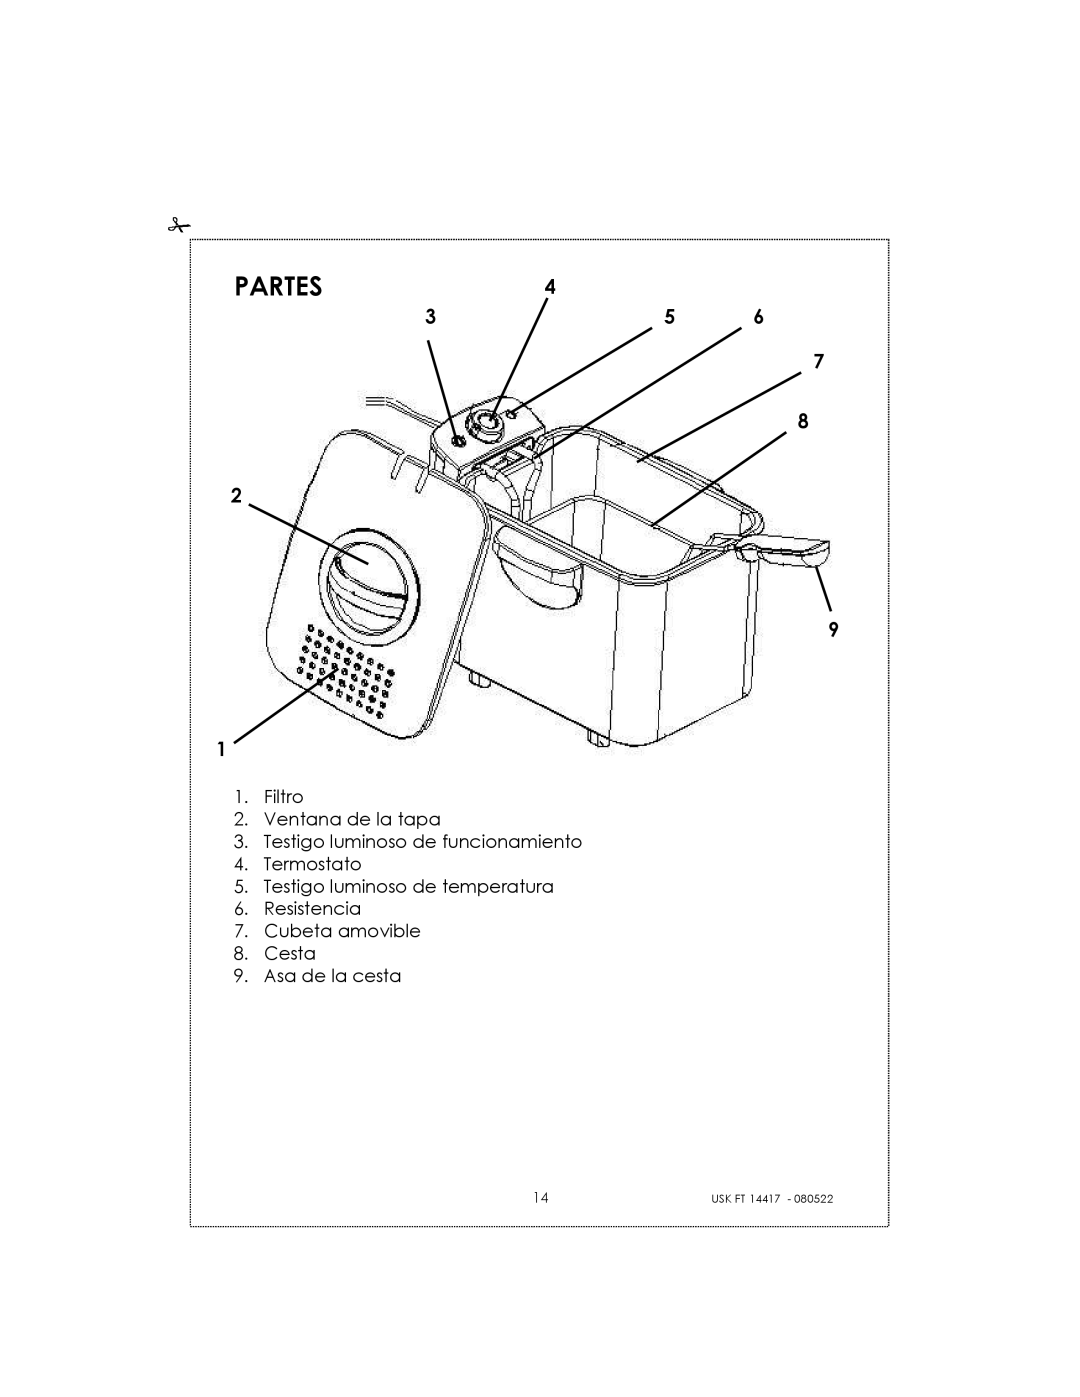 Kalorik USK FT 14417 manual Partes, 2 9 1, Filtro 2.Ventana de la tapa, Testigo luminoso de funcionamiento 4.Termostato 